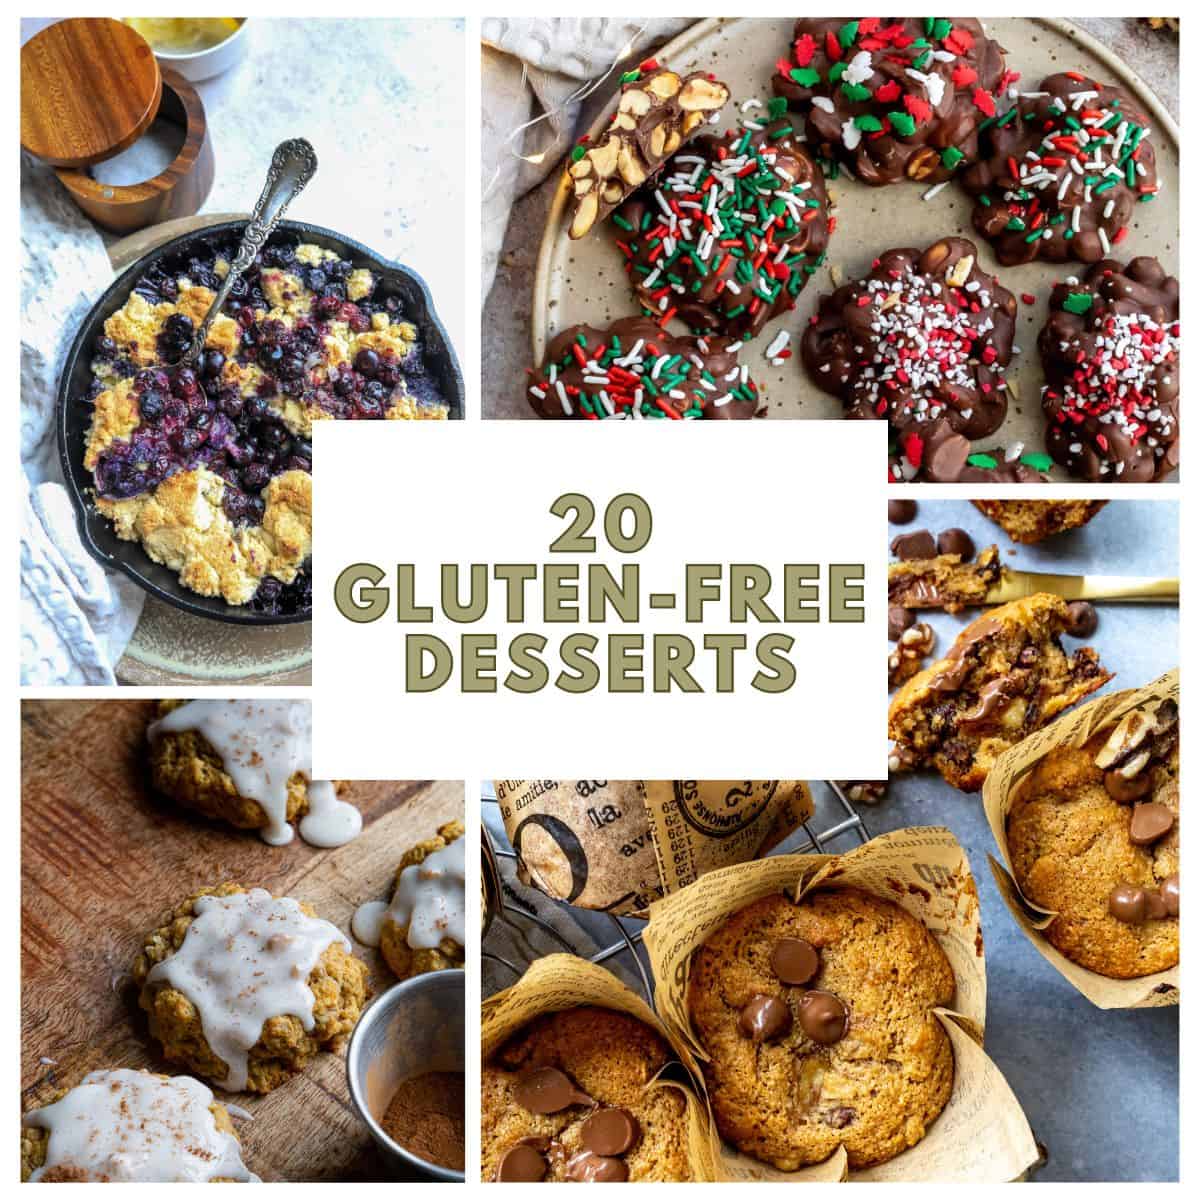 A collage of gluten free desserts.